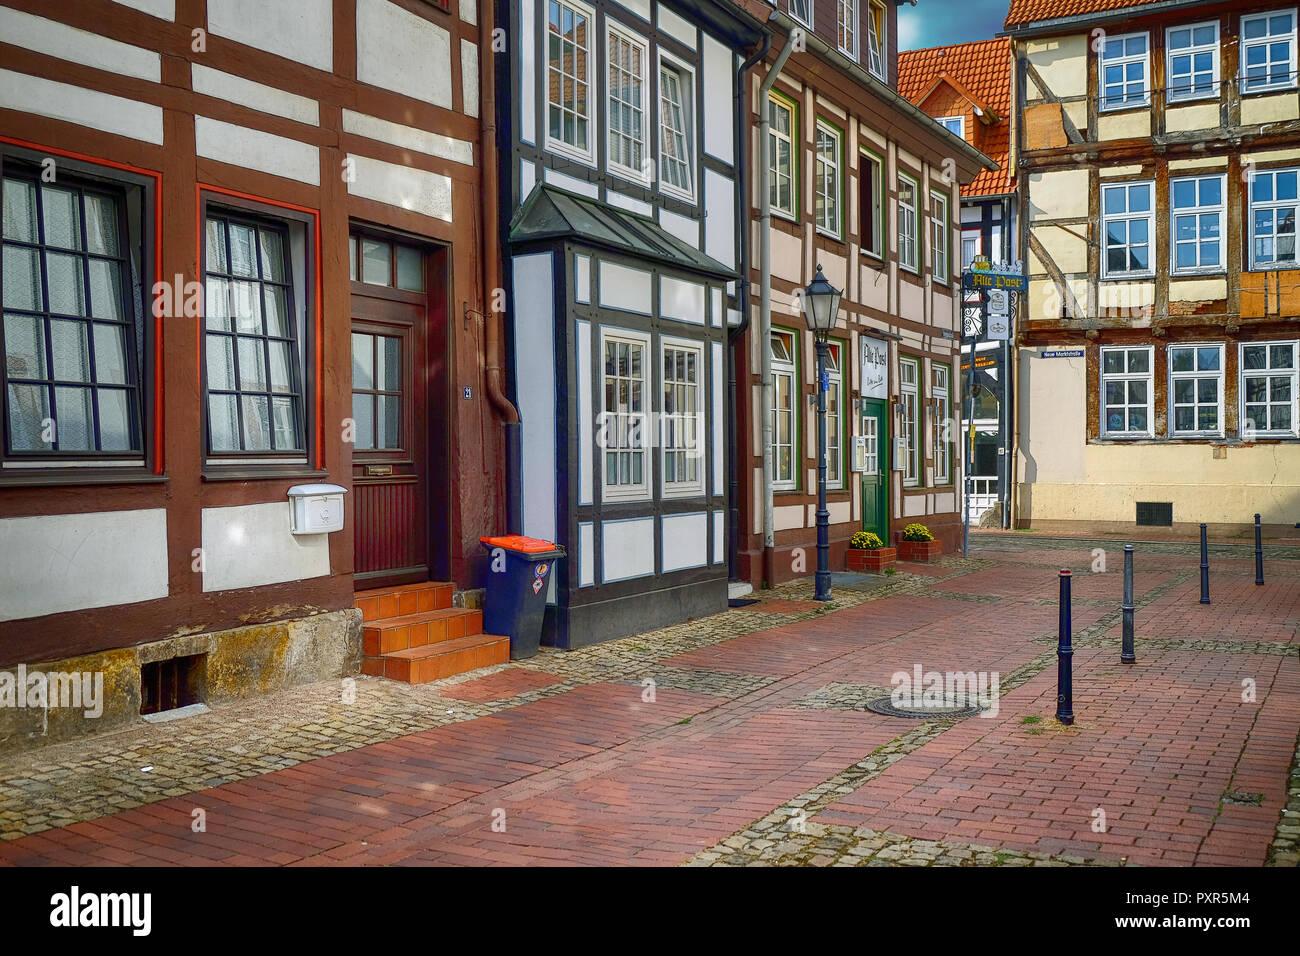 Centro storico della città e case tradizionali di Hameln/Hamelin, Germania durante le giornate di sole Foto Stock